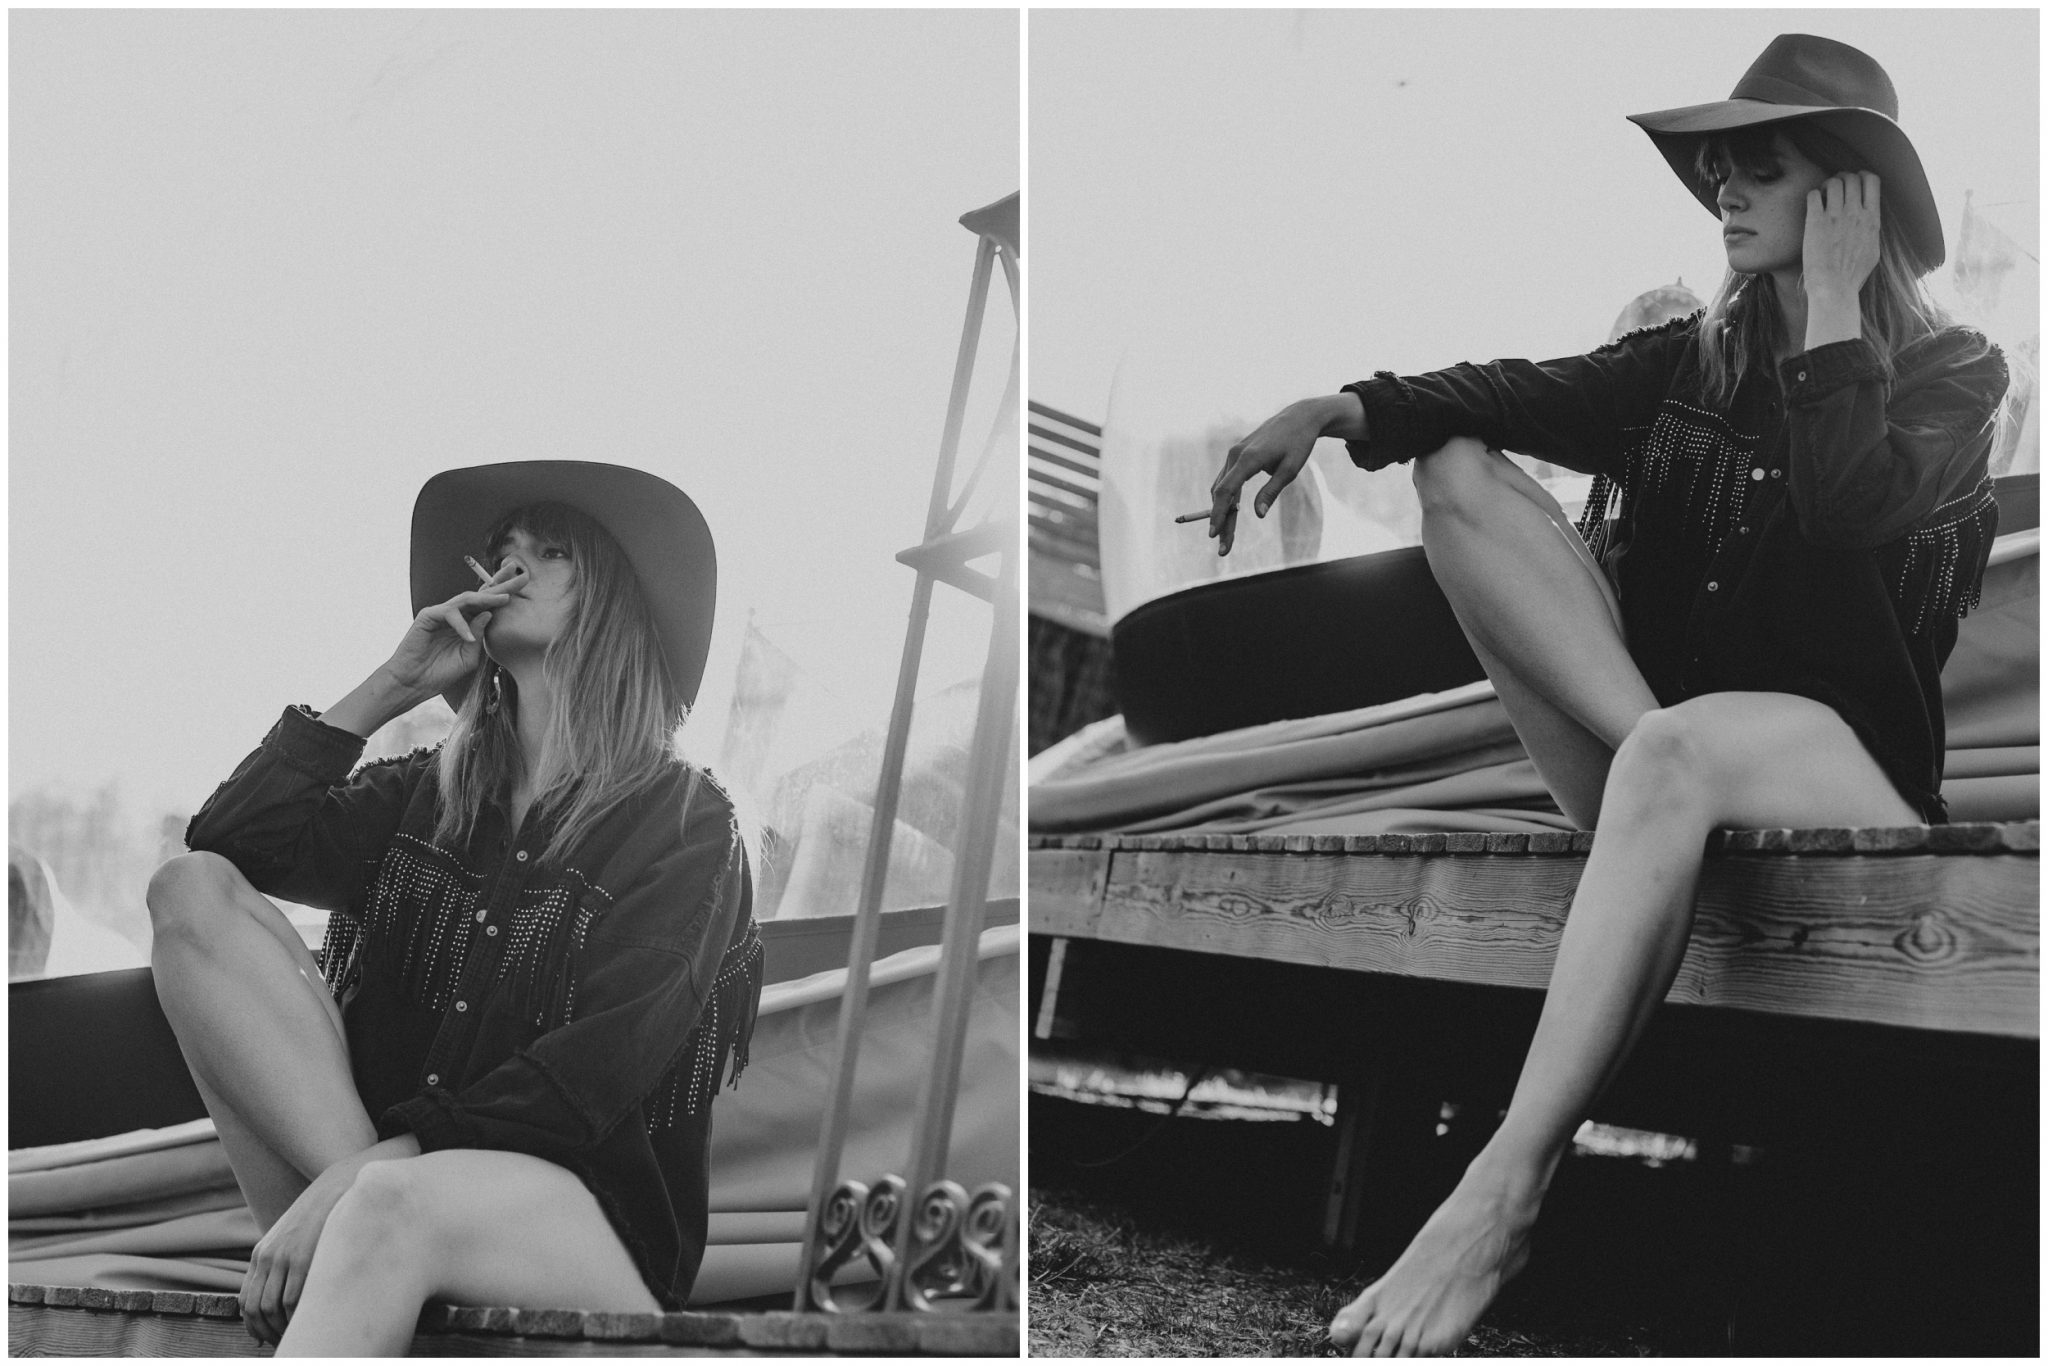 Fotografia en blanco y negro, chica con sombrero